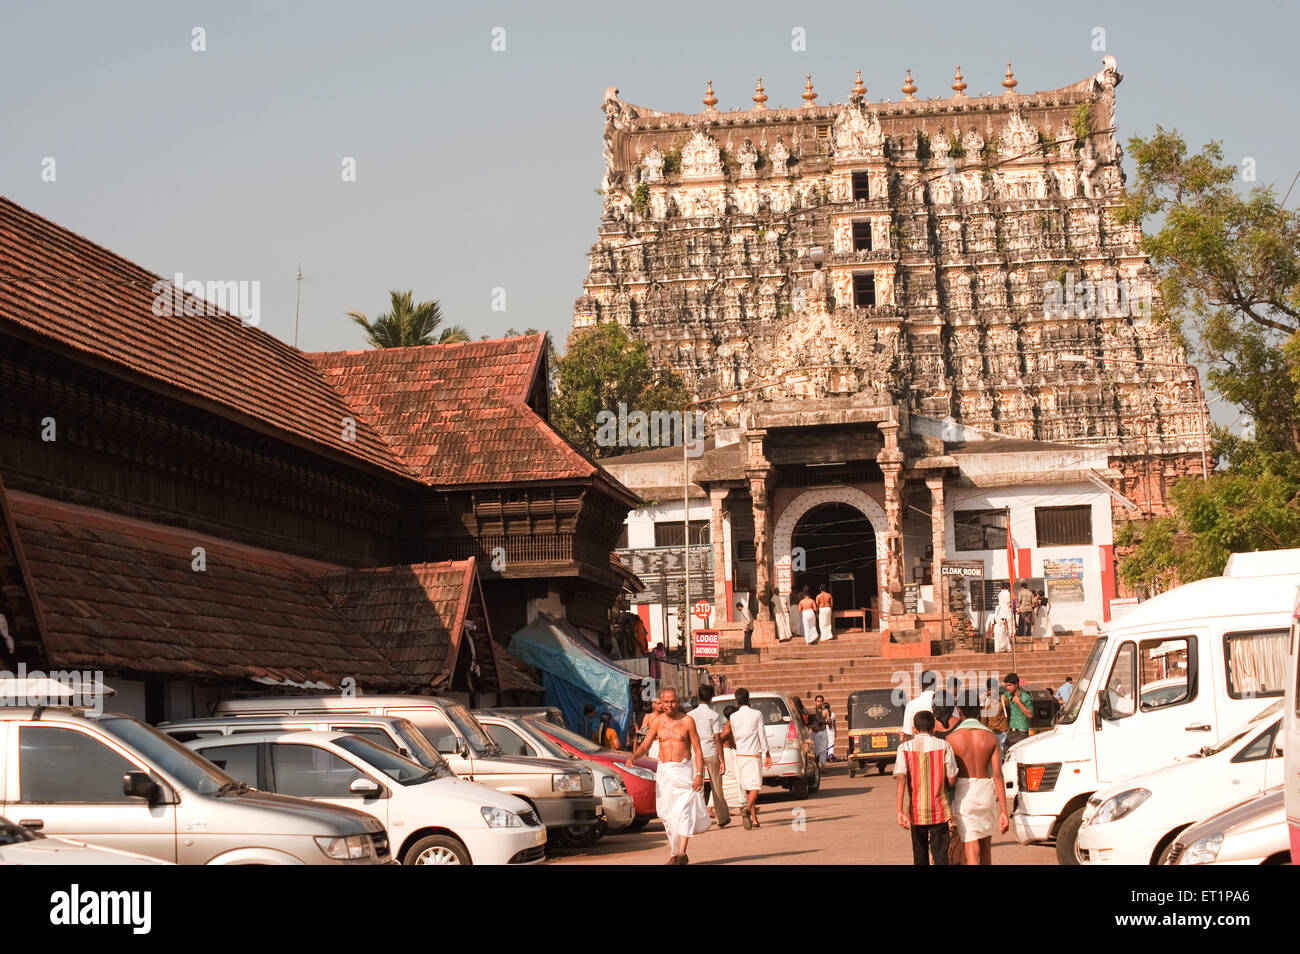 Anantha padmanabhaswamy temple ; Trivandrum Thiruvananthapuram ; Kerala ; India Stock Photo